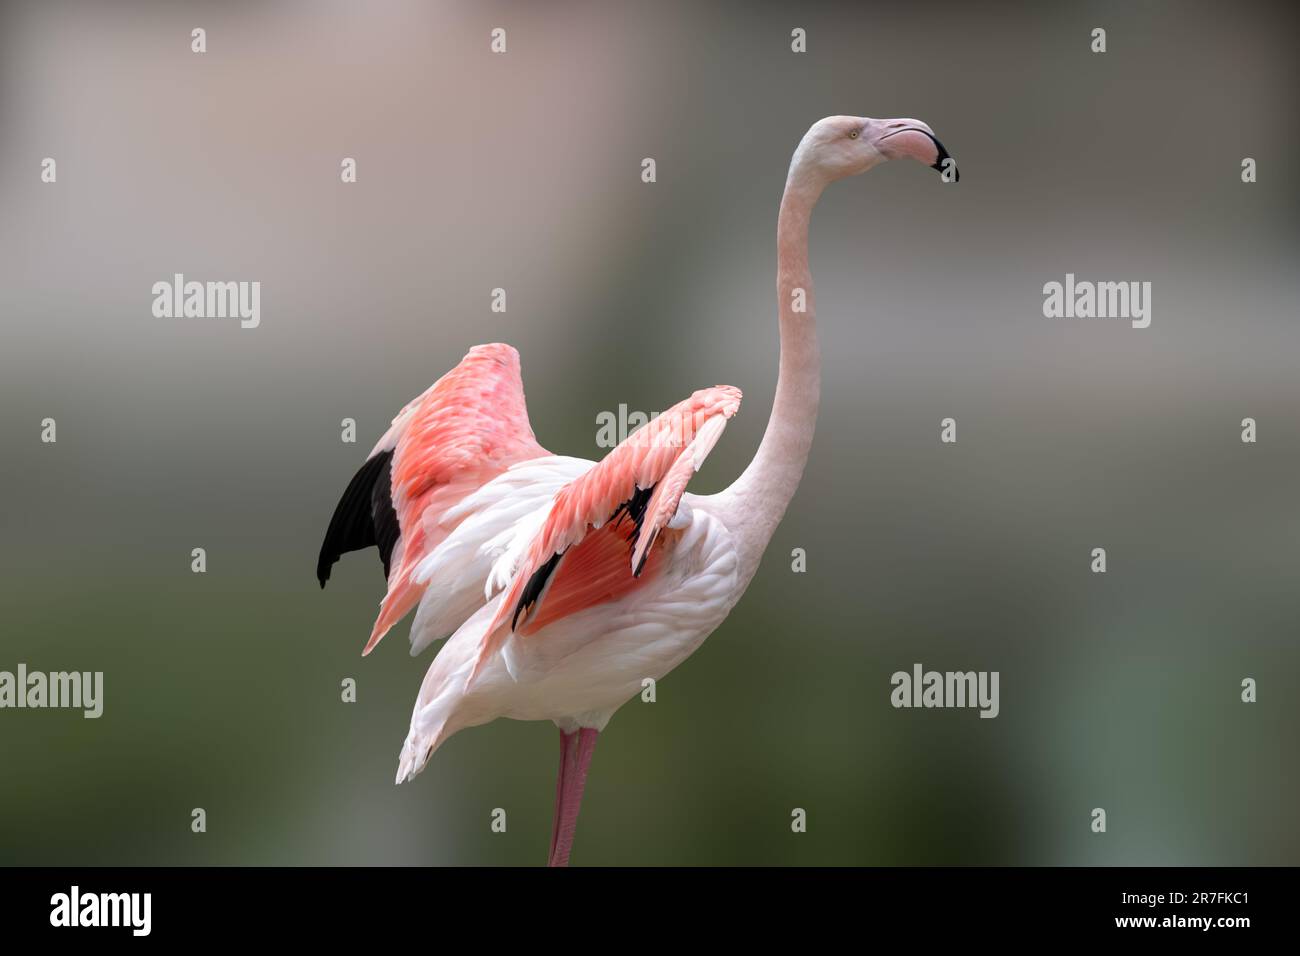 Rosafarbener Flamingo-Watvögel mit langem Hals und offenen Flügeln auf verschwommenem Hintergrund Stockfoto